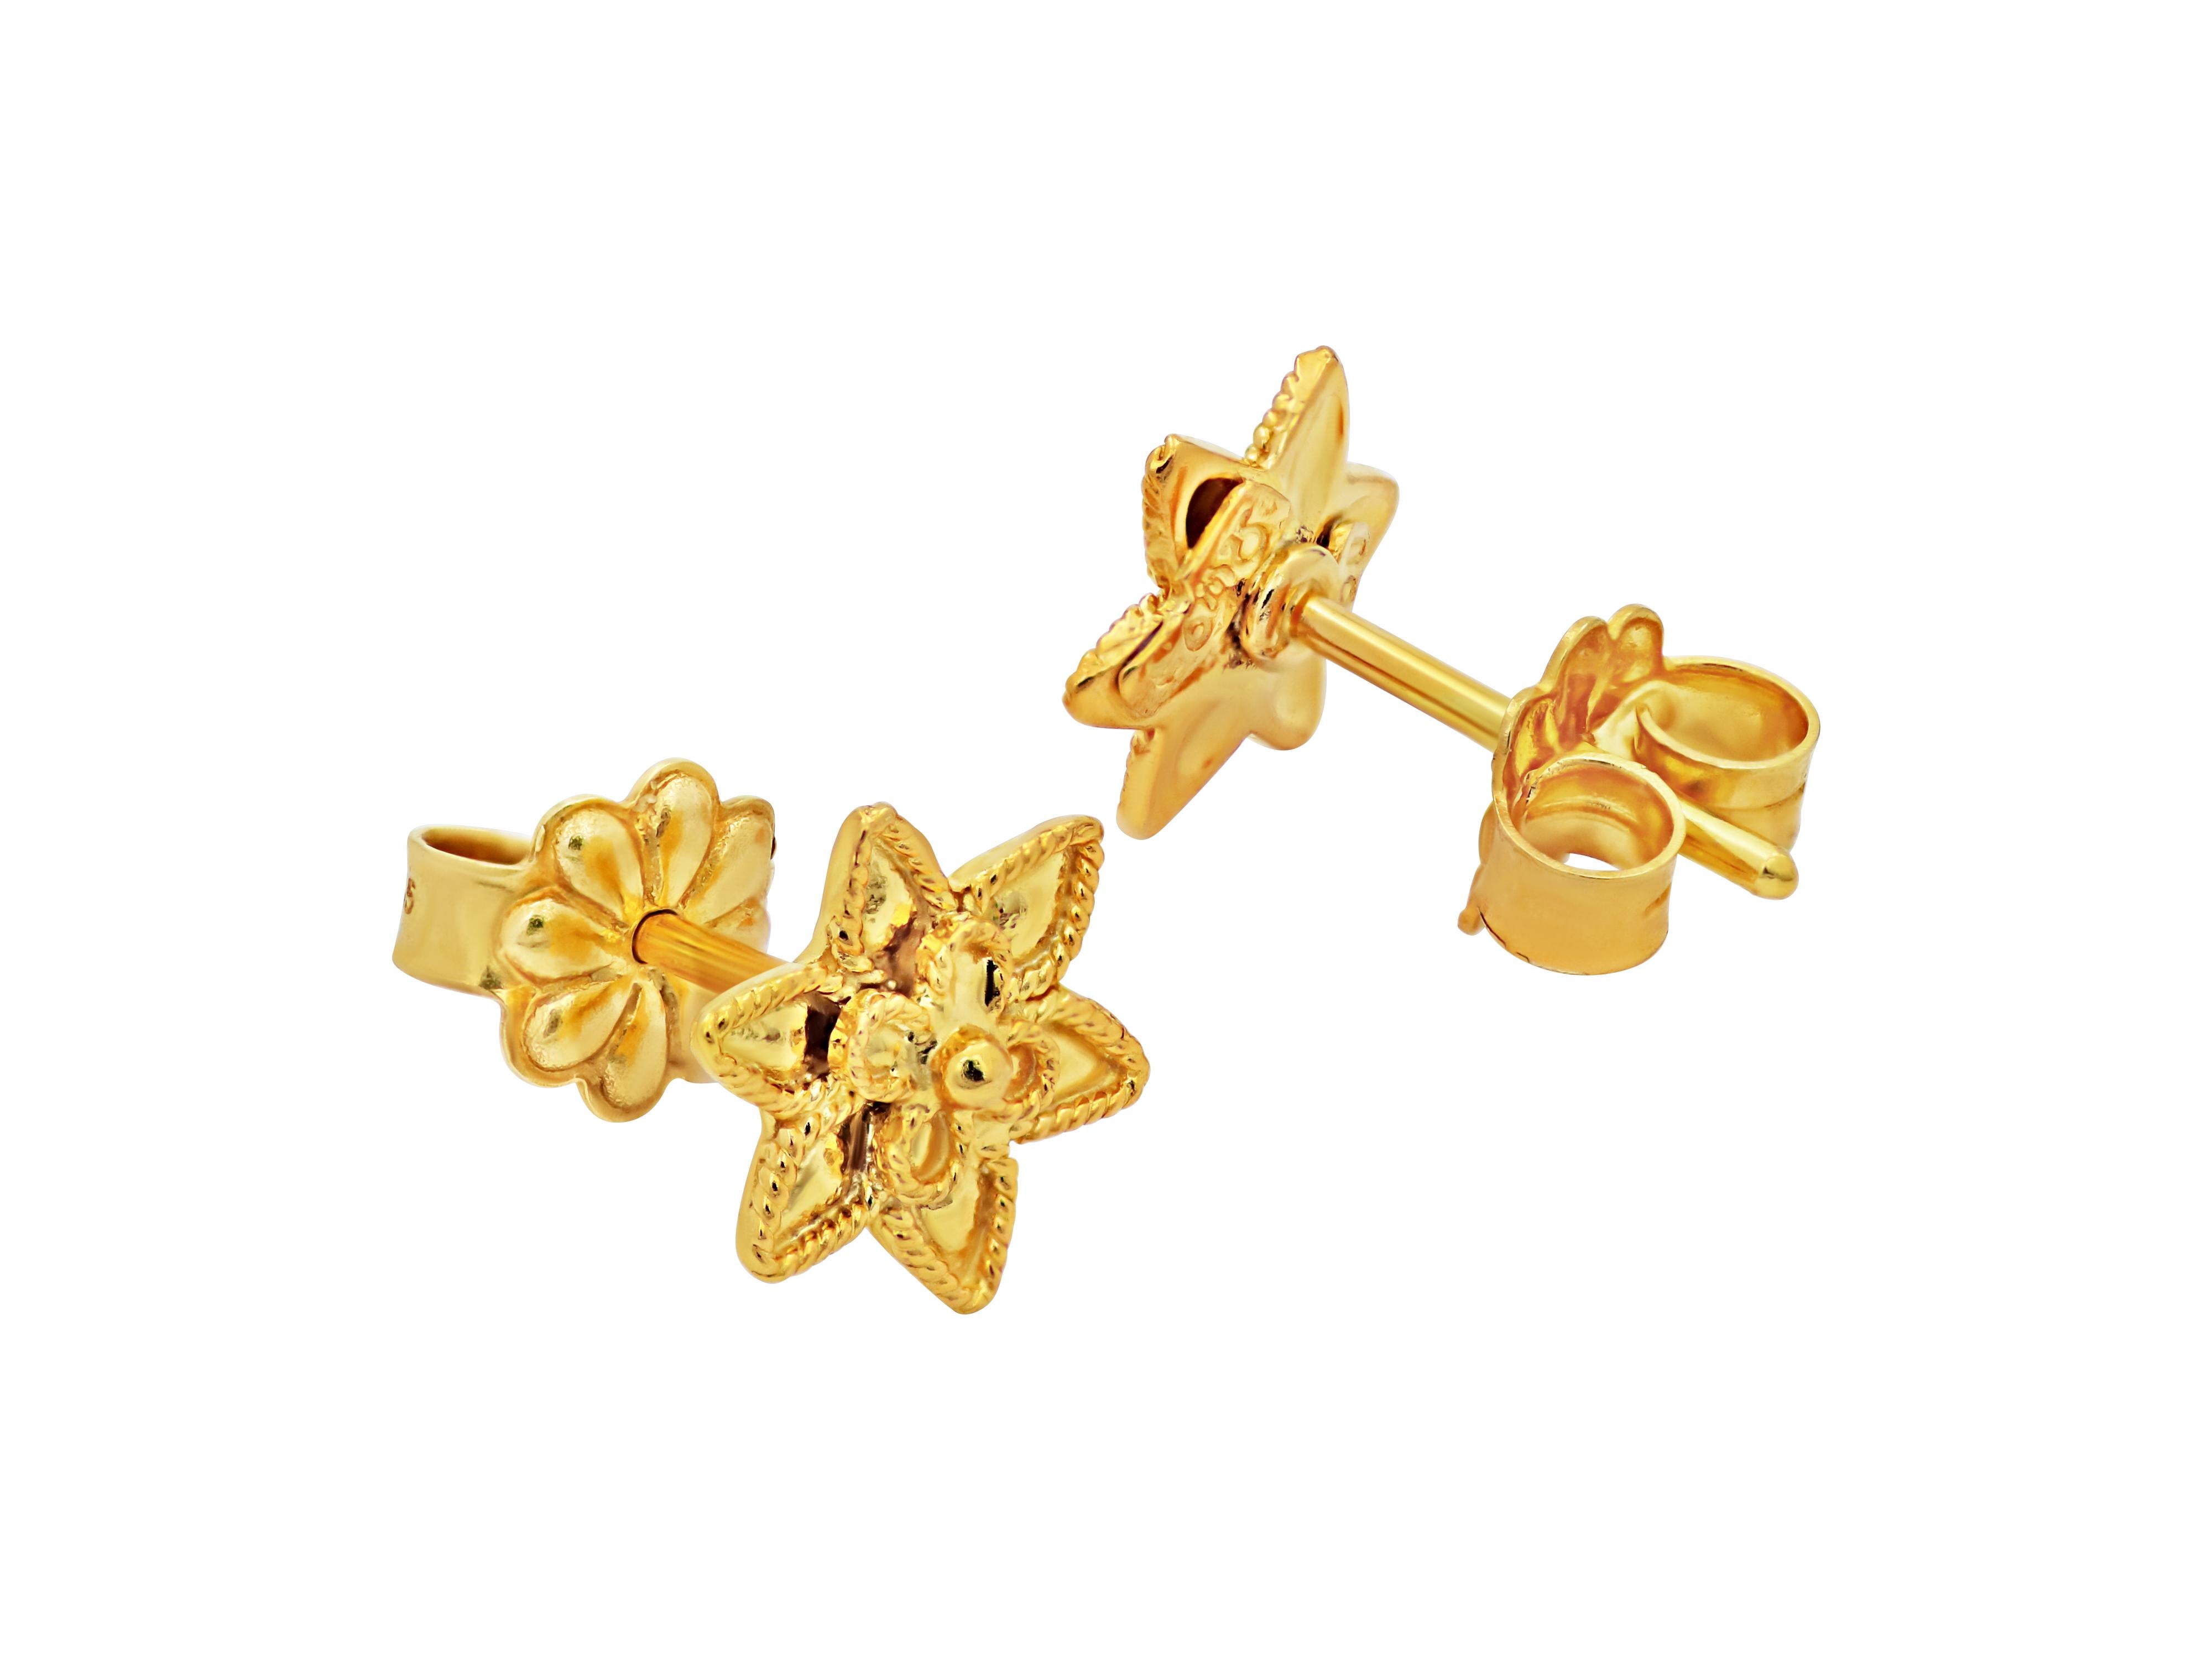 Sternförmige Ohrstecker in kleiner Größe mit filigranem Design, besetzt mit 18k Gelbgold. In der Mitte jedes Ohrrings befindet sich ein kleines Gänseblümchen. Ein Werk im neoklassischen Museumsstil, das von Klasse, Geschmack und Wissen zeugt. 